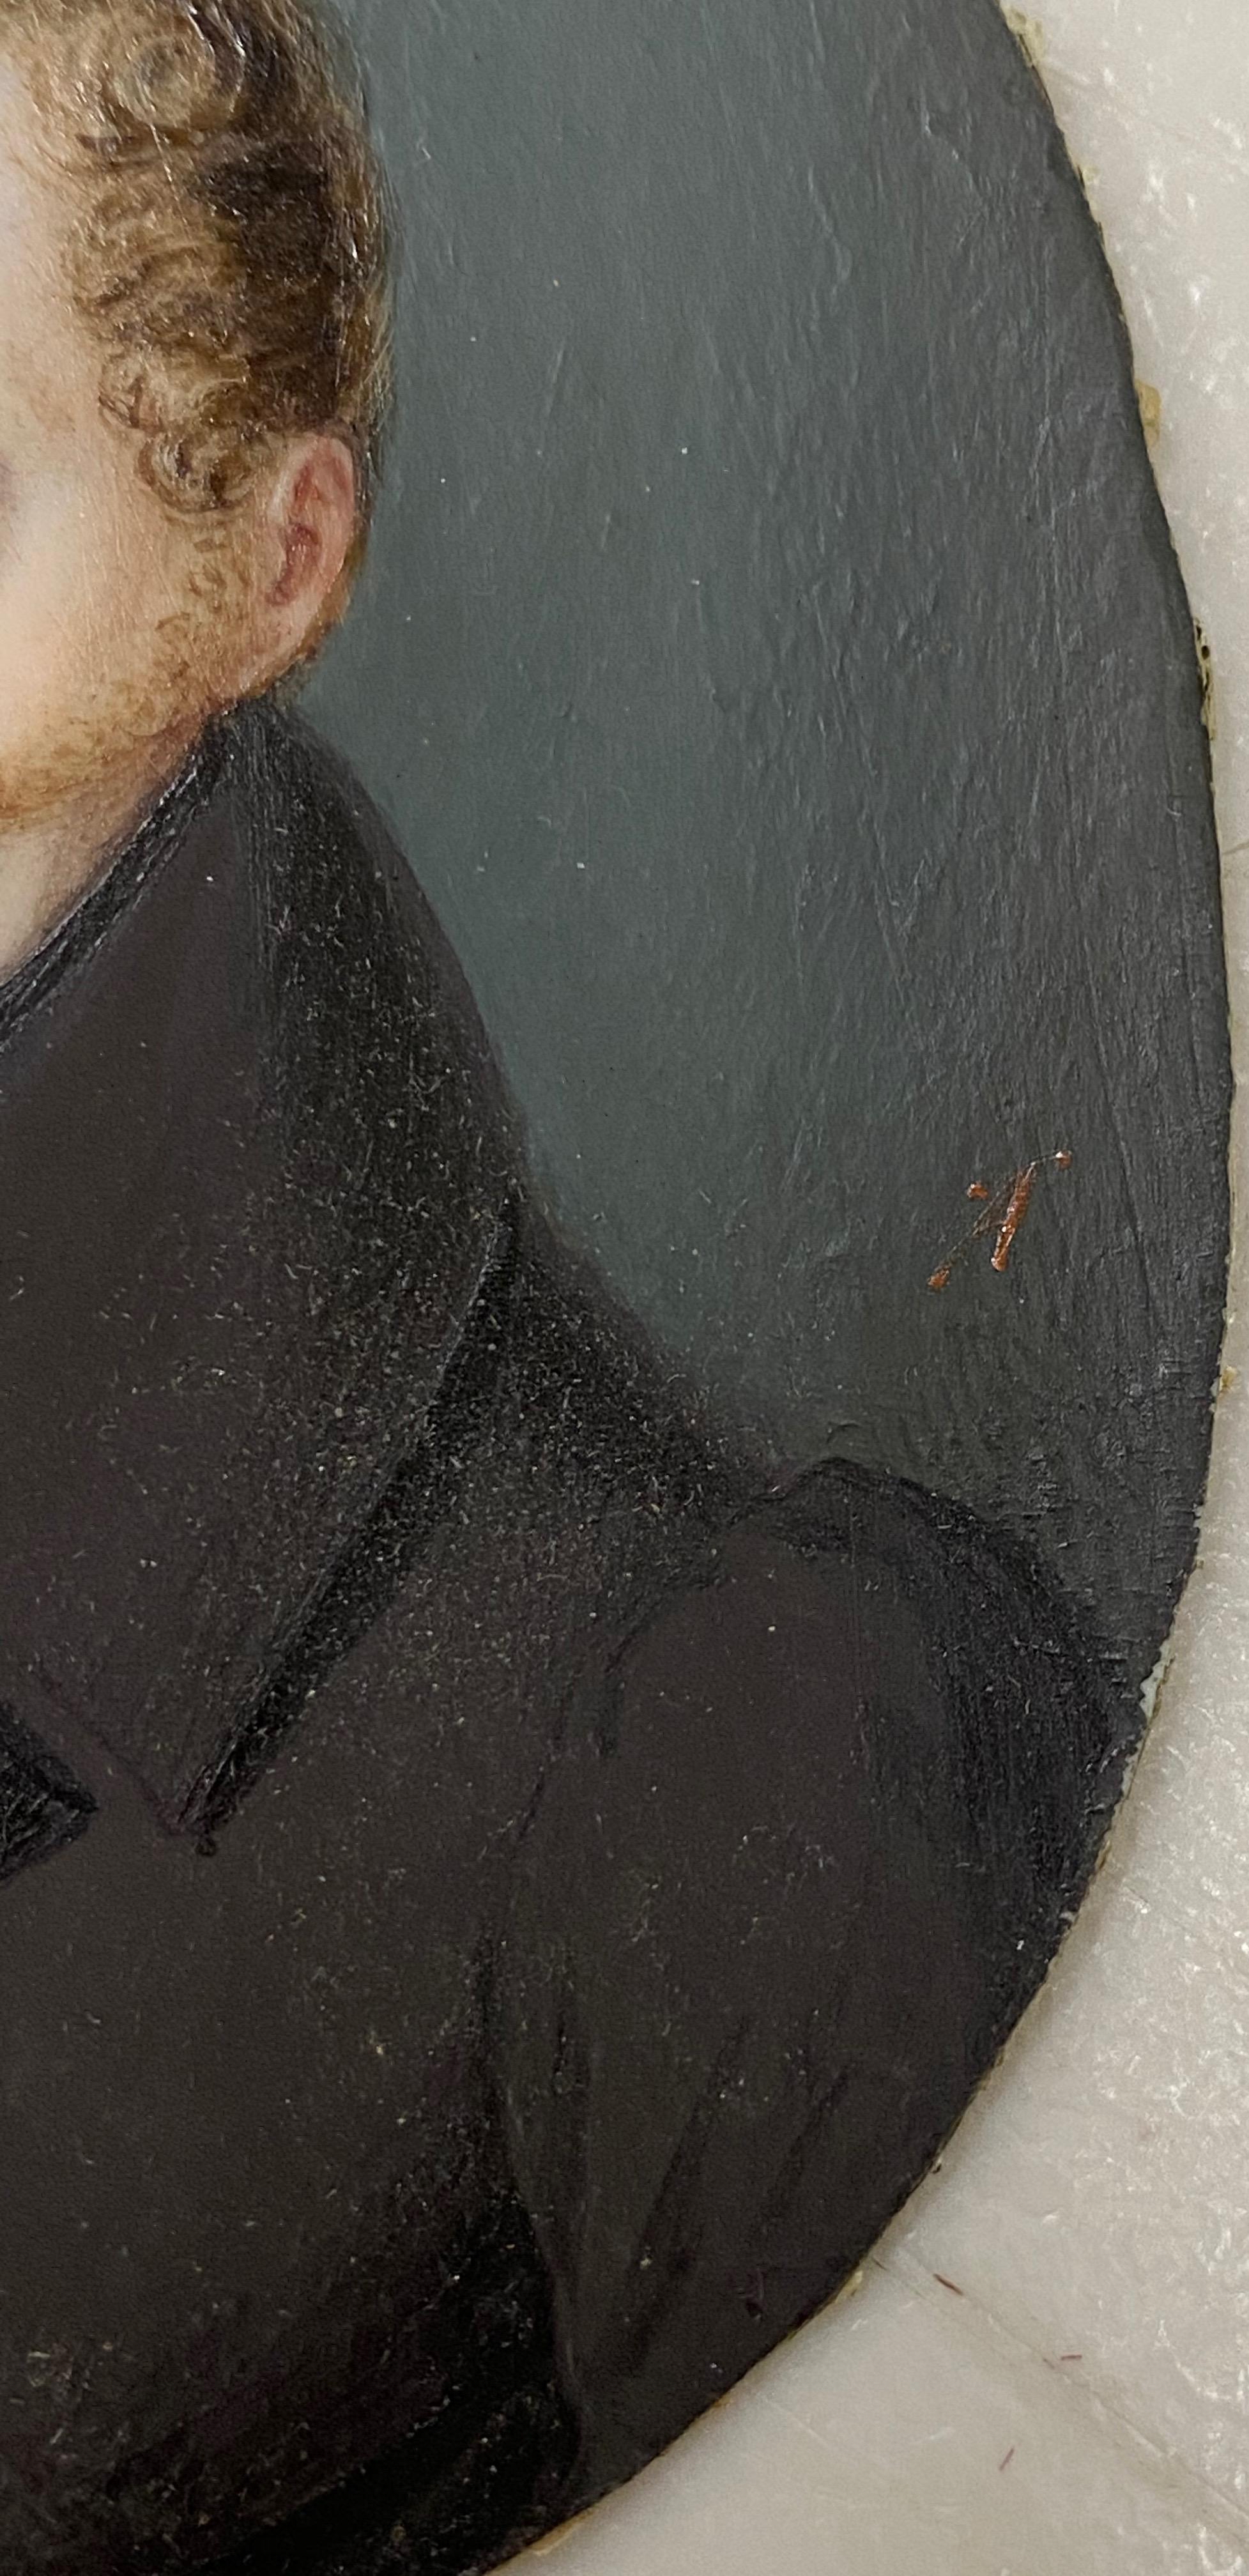 portrait miniature du 19e siècle d'un jeune homme aux cheveux roux bouclés

Dimensions 3